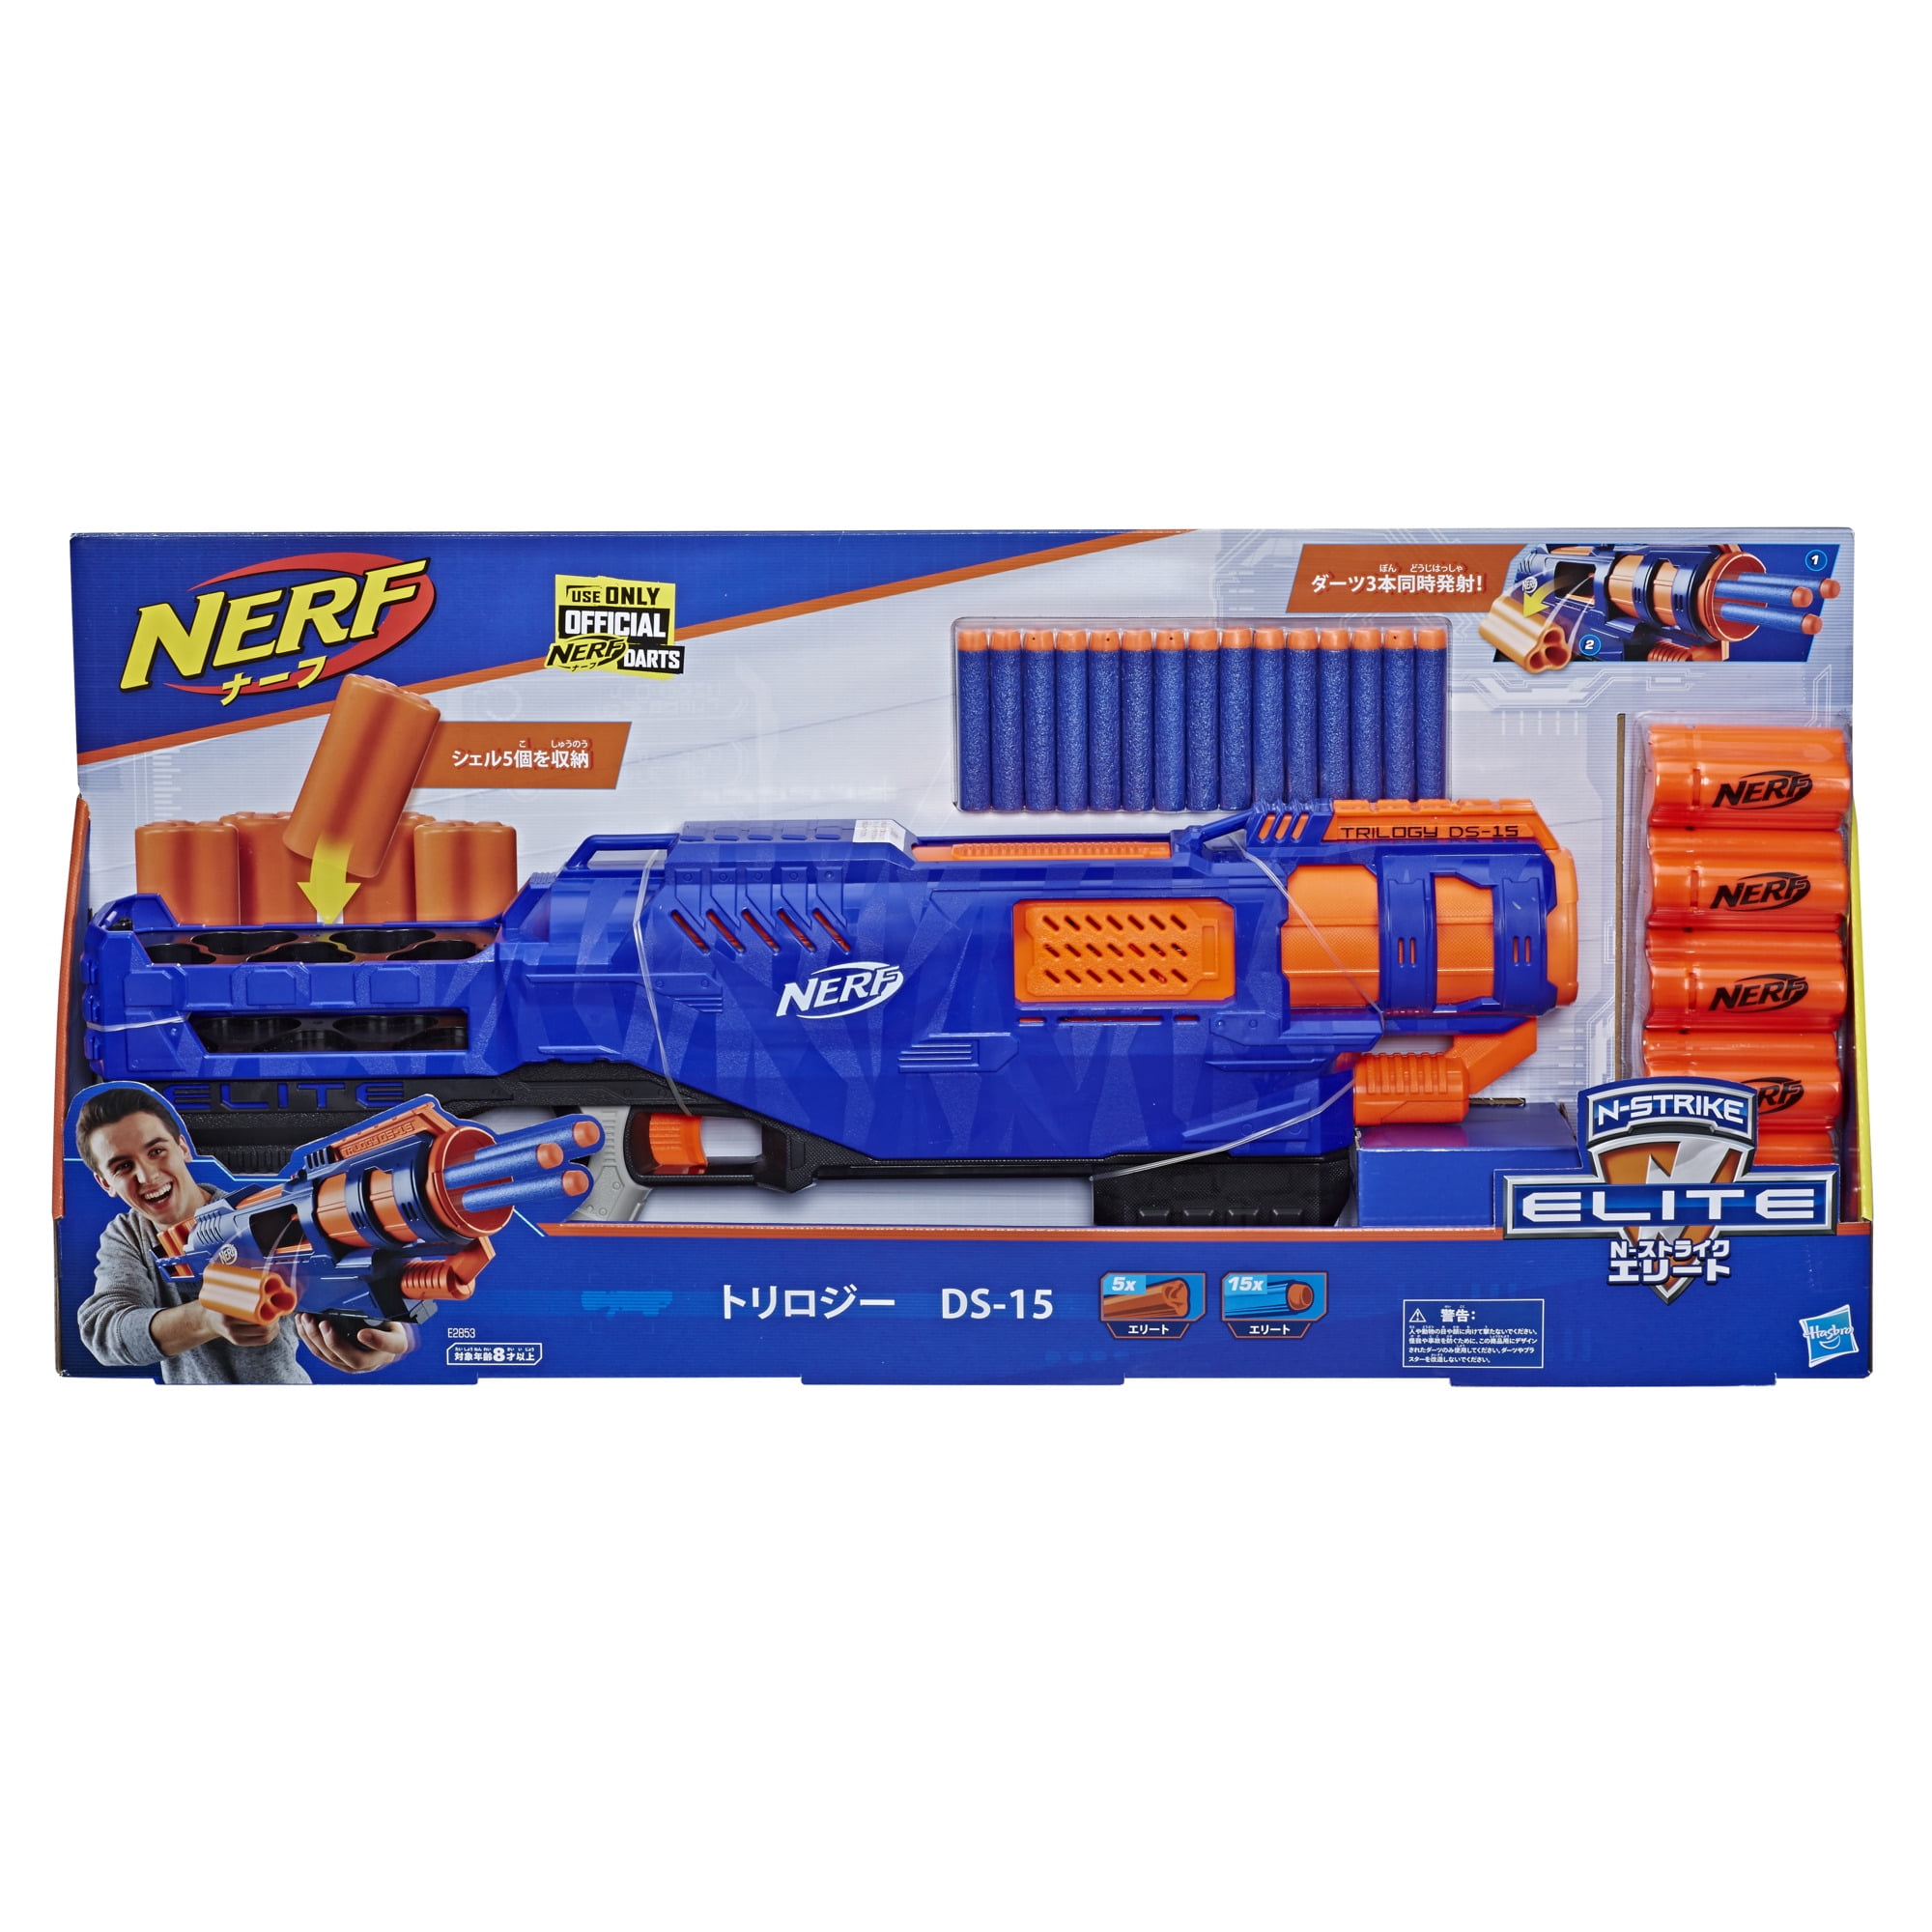 NERF N-strike Elite 30 Dart Refill Toy Indoor Outdoor Gun Ammo Blaster Ages 8 for sale online 